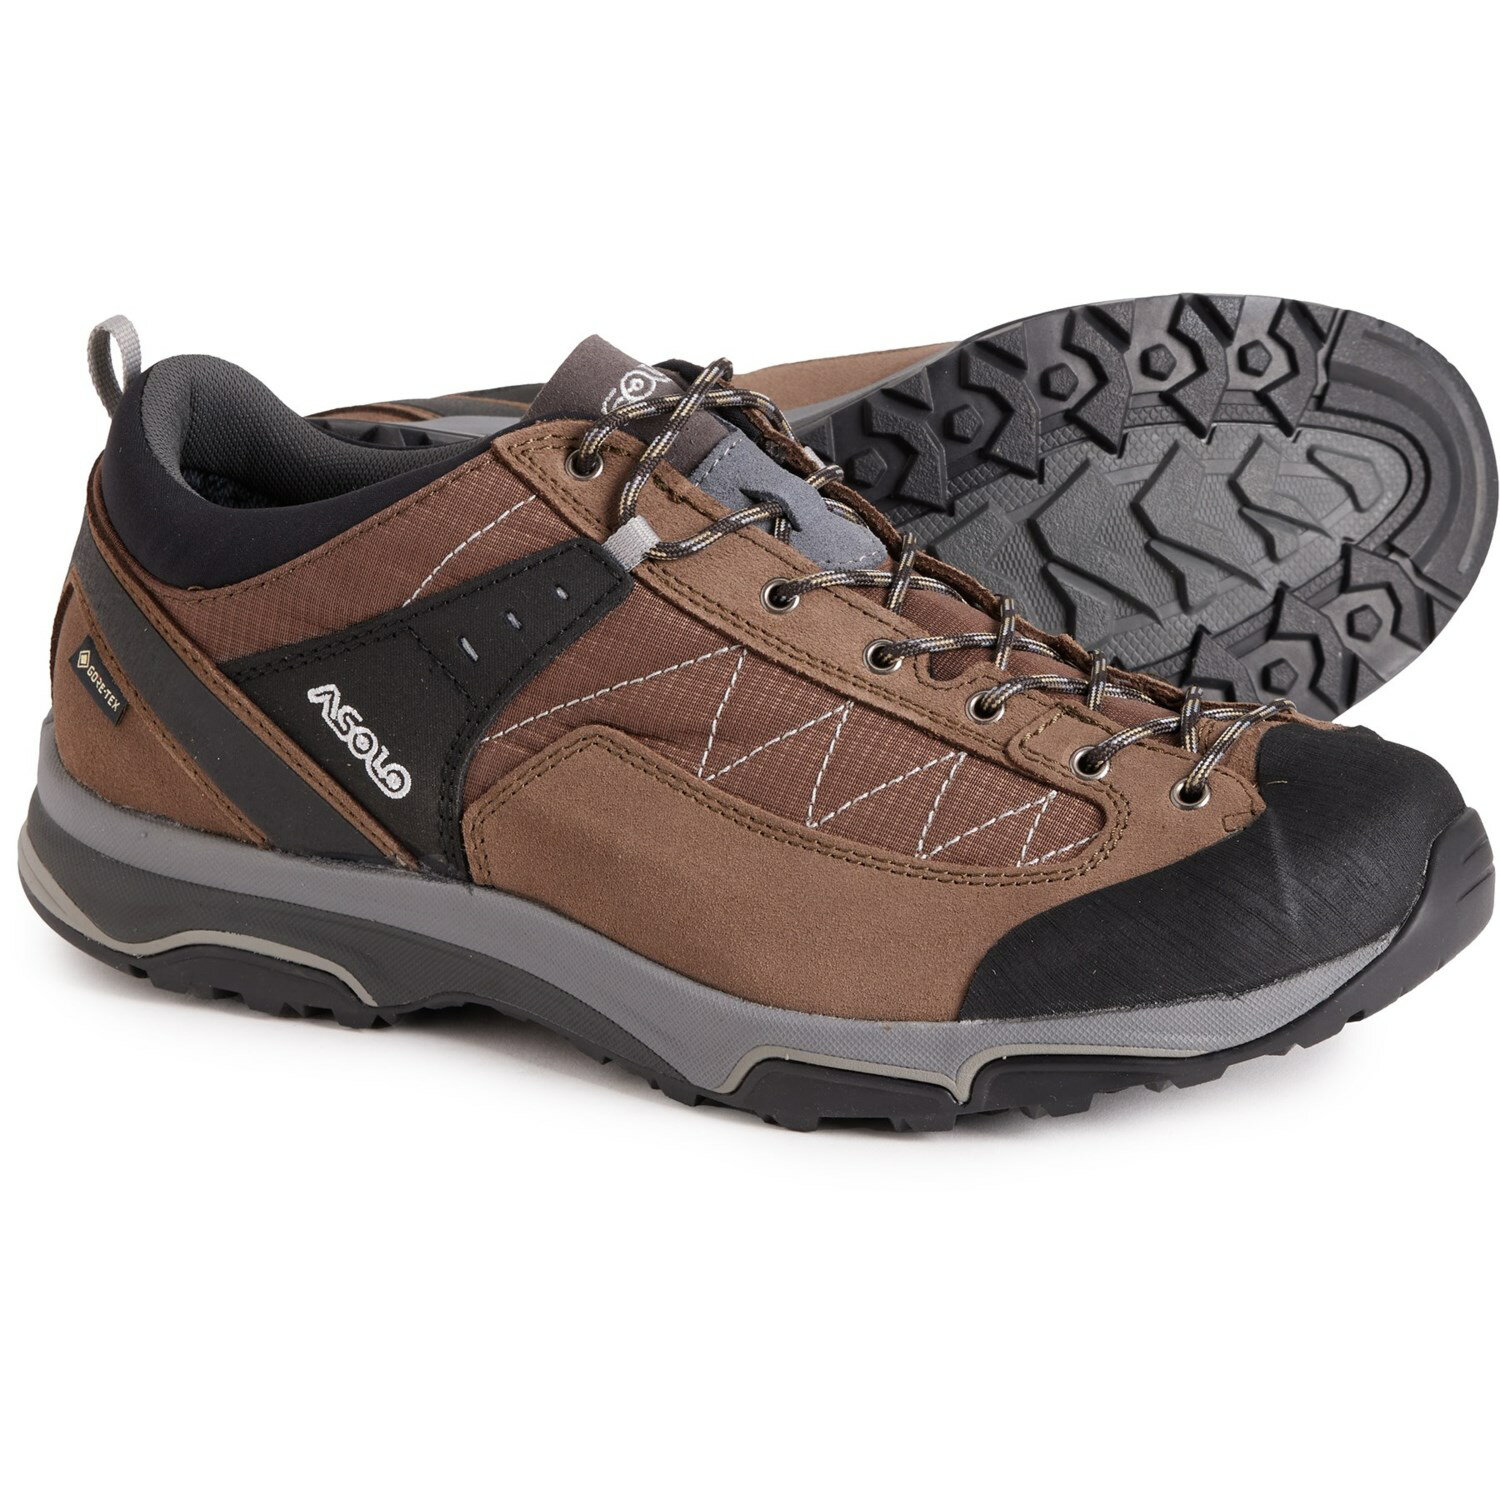 (取寄) アゾロ メンズ メイド イン ヨーロッパ パイプ GV ゴア-テックス ハイキング シューズ Asolo men Made in Europe Pipe GV Gore-Tex Hiking Shoes (For Men) Almond/Brown